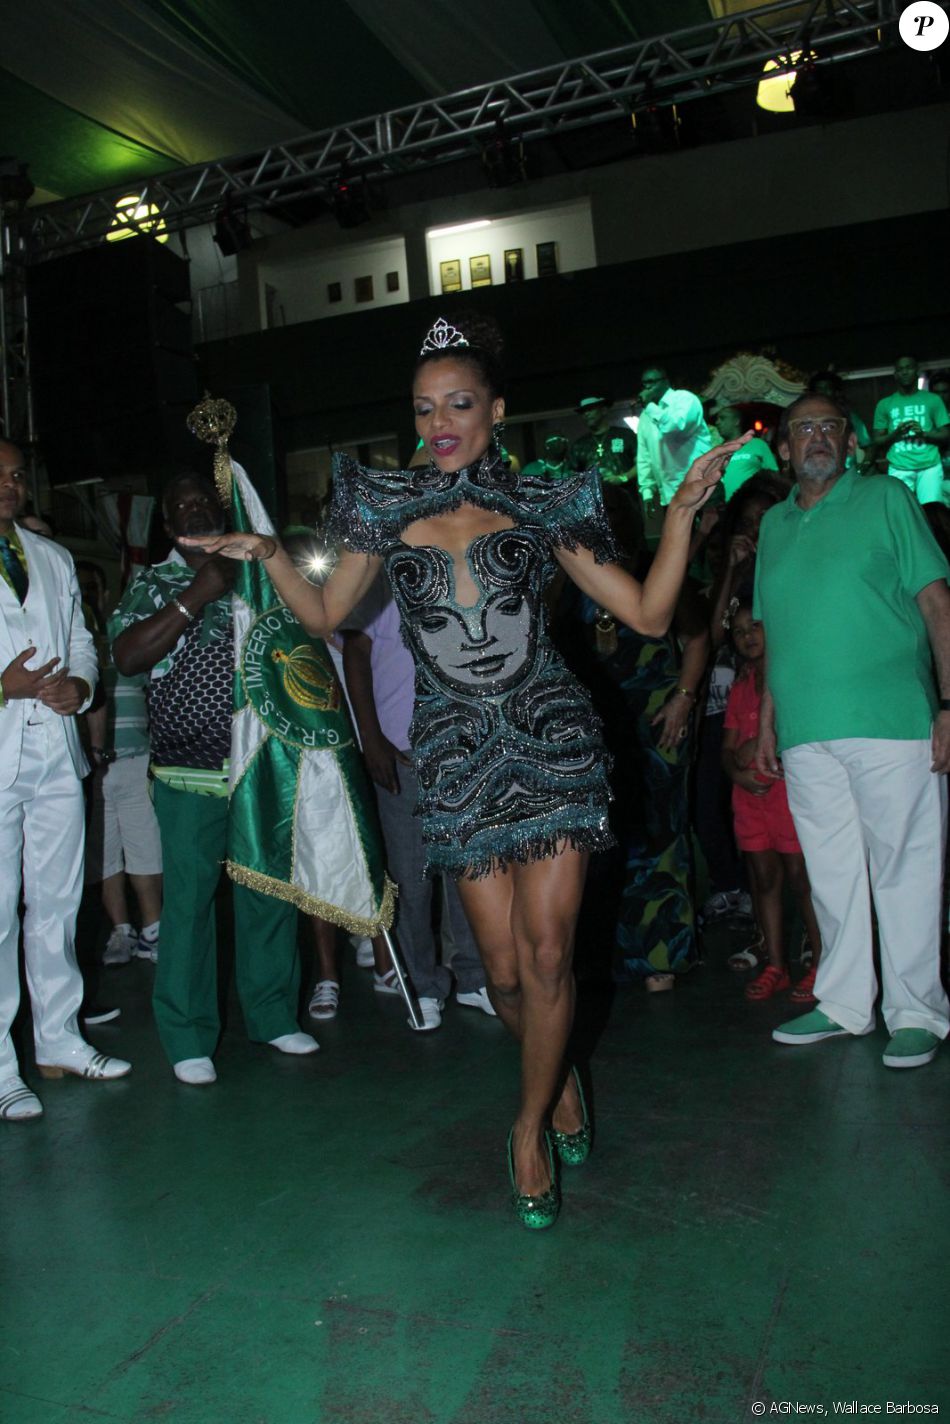 Quitéria Chagas é coroada rainha da escola de samba Império Serrano, no Rio de Janeiro, para o Carnaval 2017, em 20 de novembro de 2016